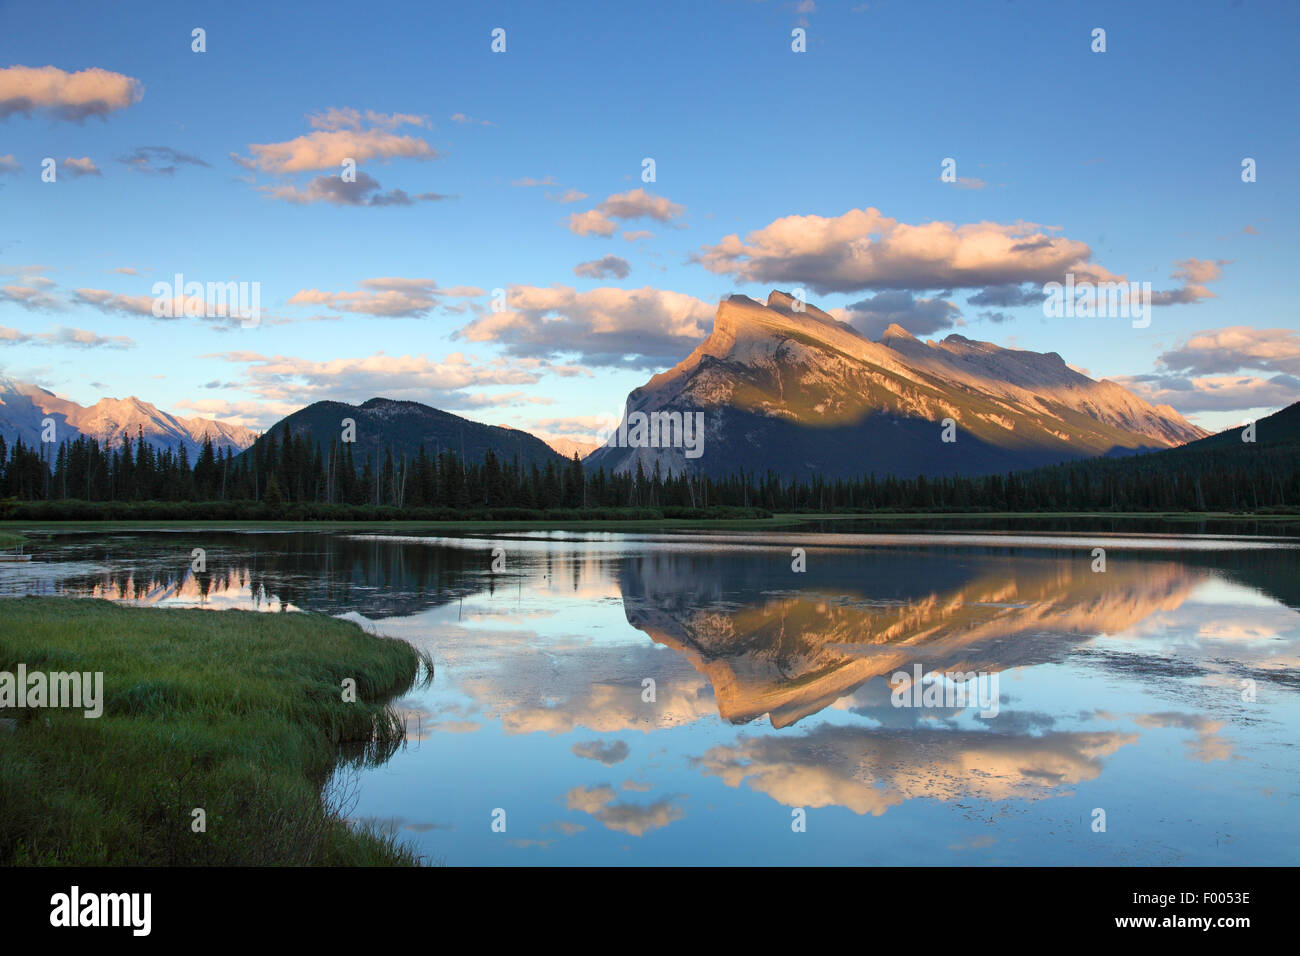 Lac Vermillion après le coucher du soleil, image miroir, le Canada, l'Alberta, parc national de Banff Banque D'Images